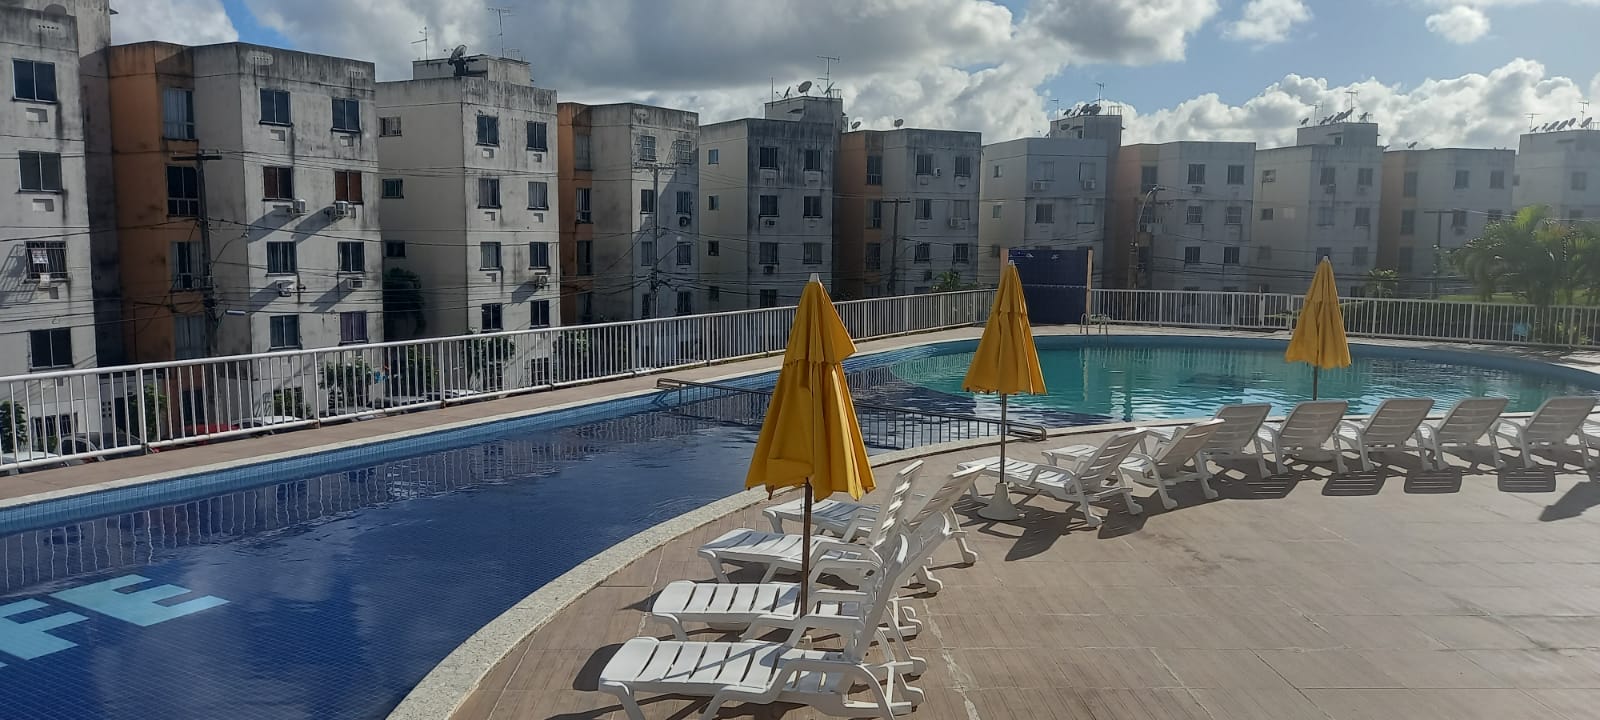 Condomínio Condominio 2 de Julho Life - Nova Brasília - Salvador - BA